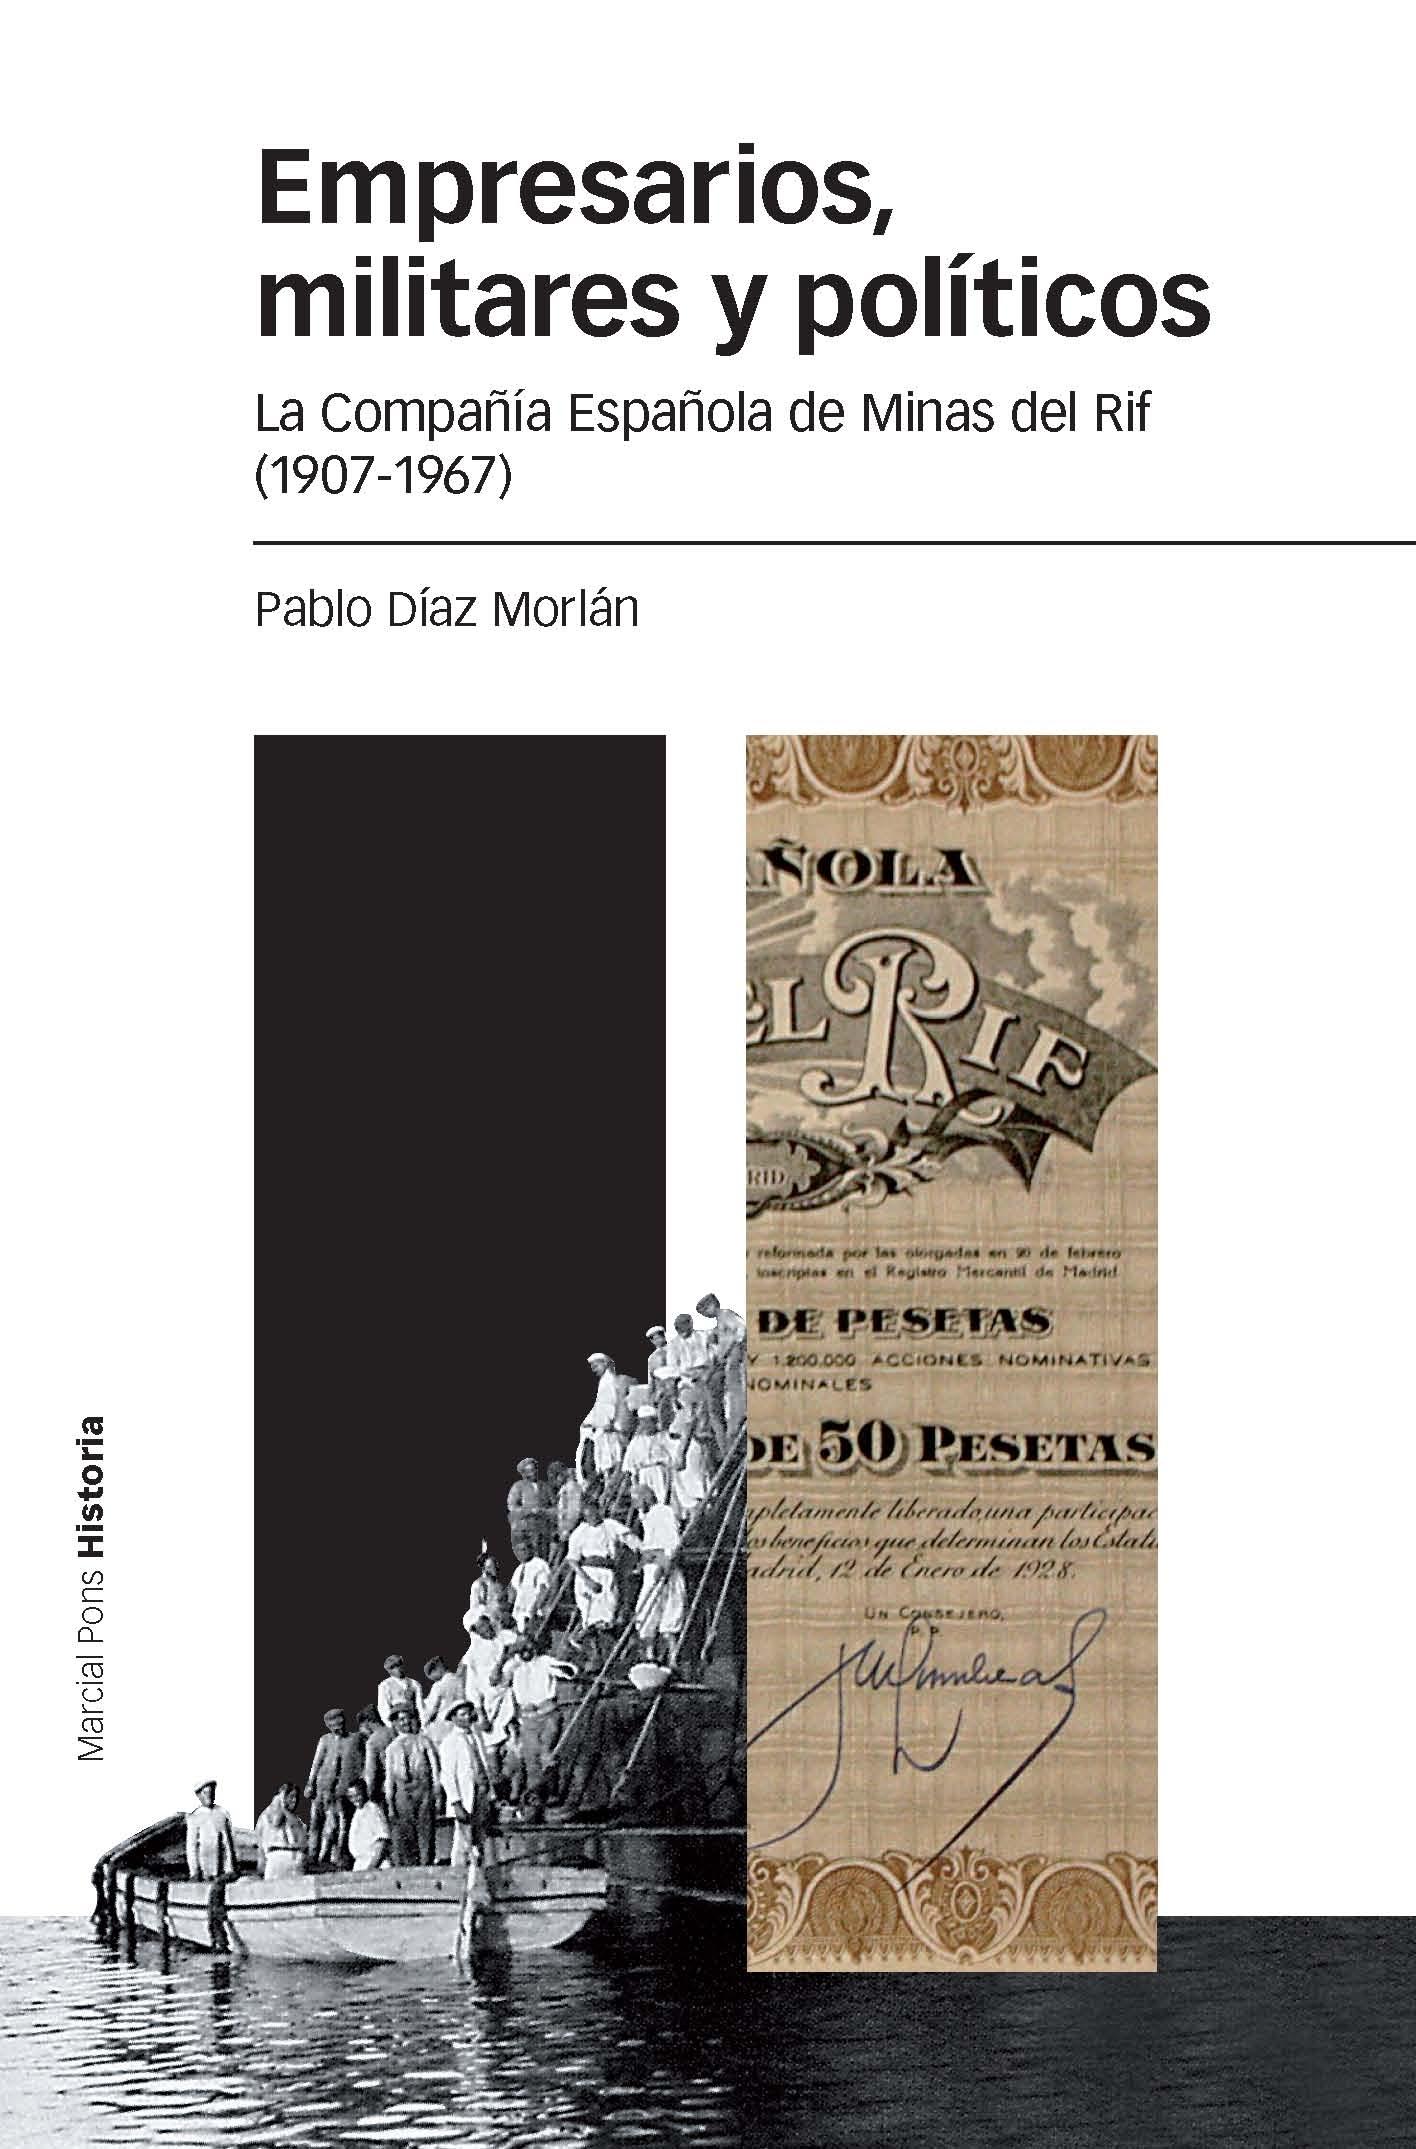 Empresarios, militares y políticos "La Compañía Española de Minas del Rif (1907-1967)"